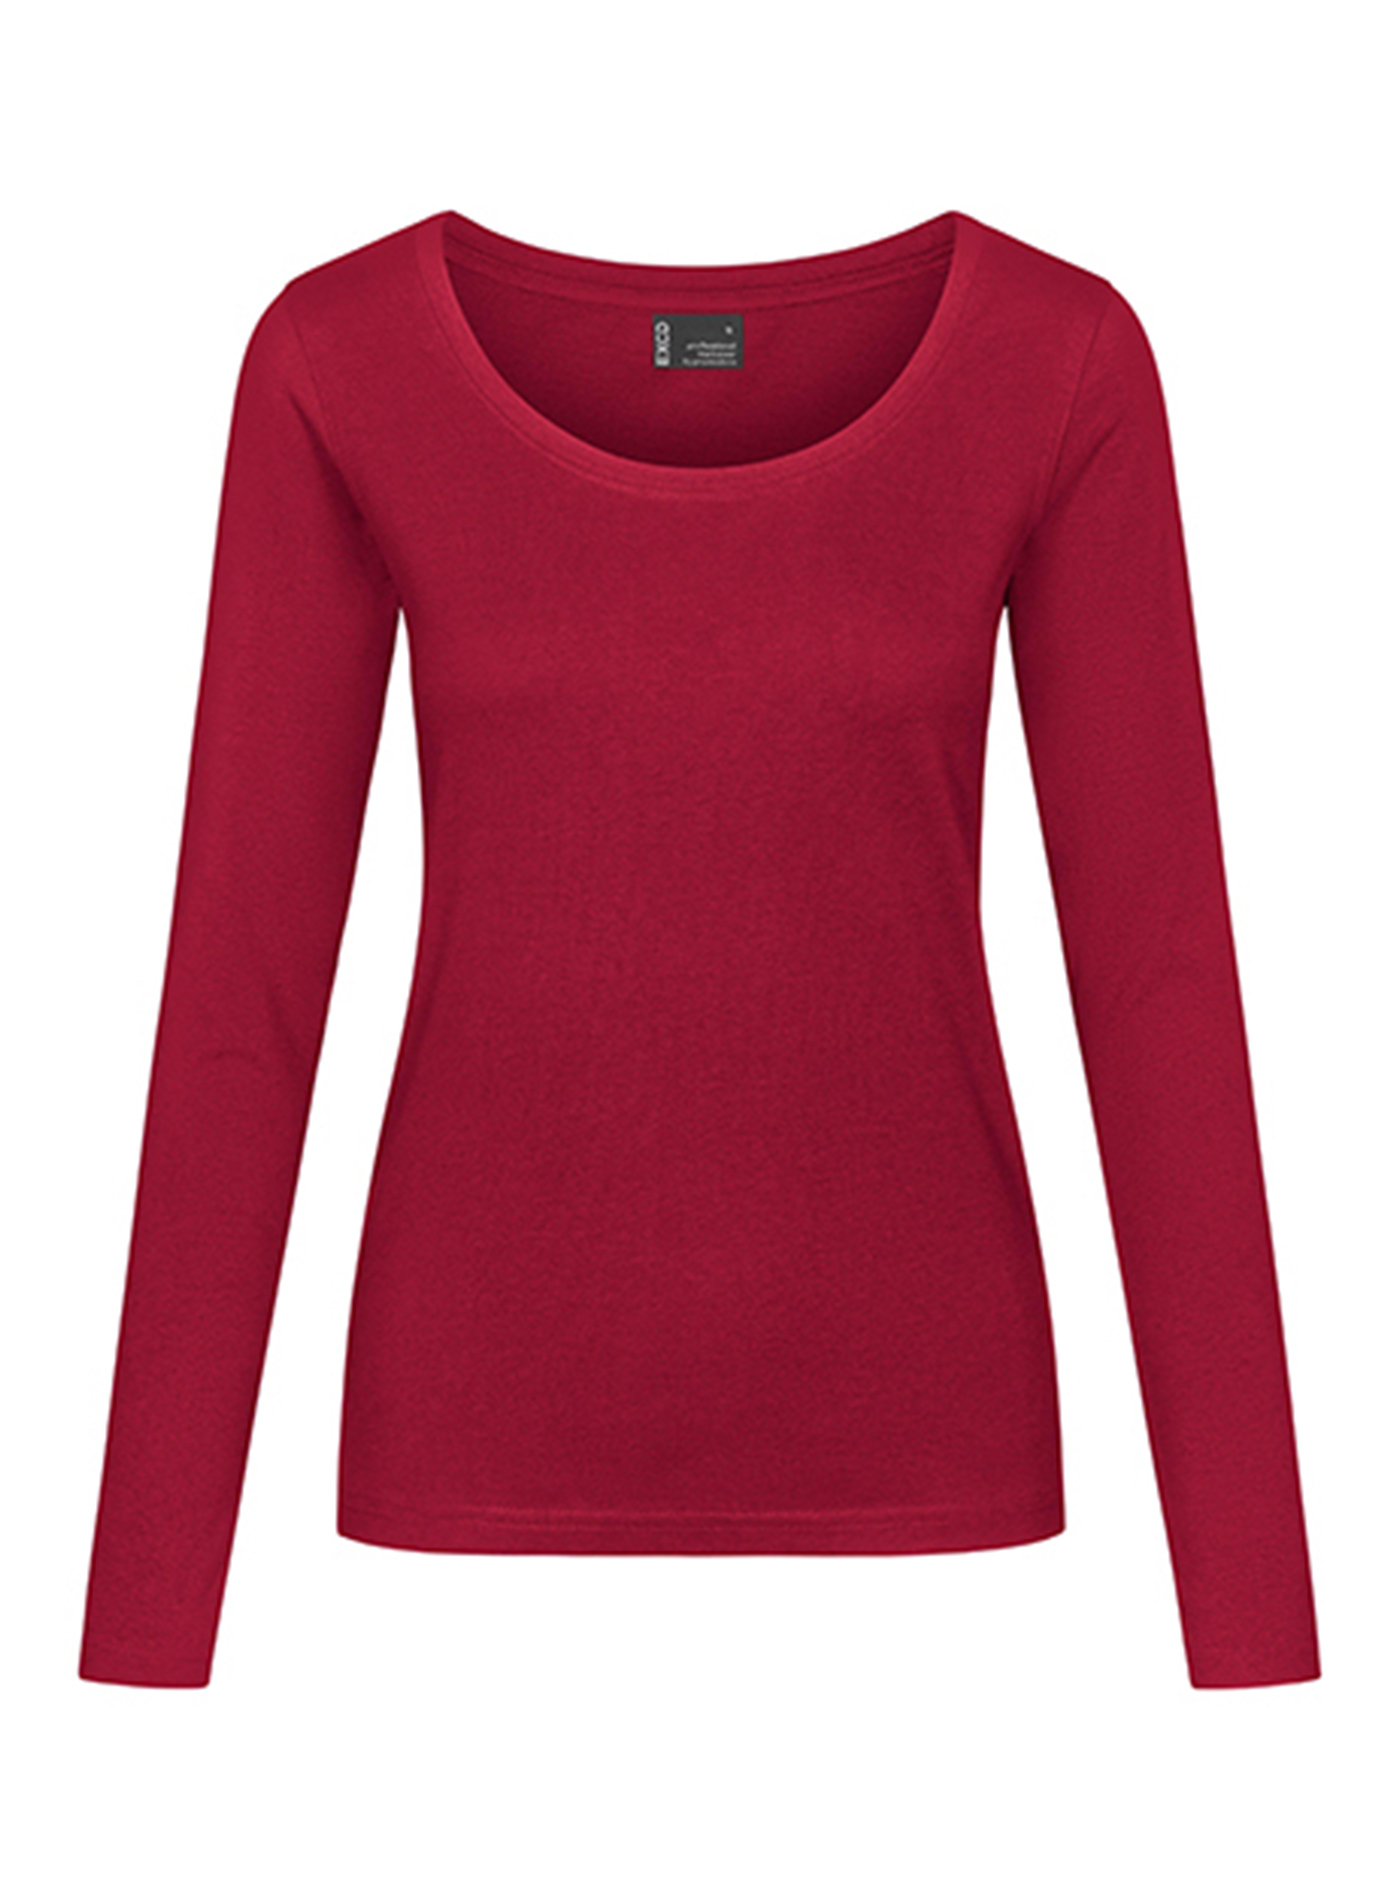 Dámské tričko s dlouhým rukávem Promodoro - Sytě červená XL